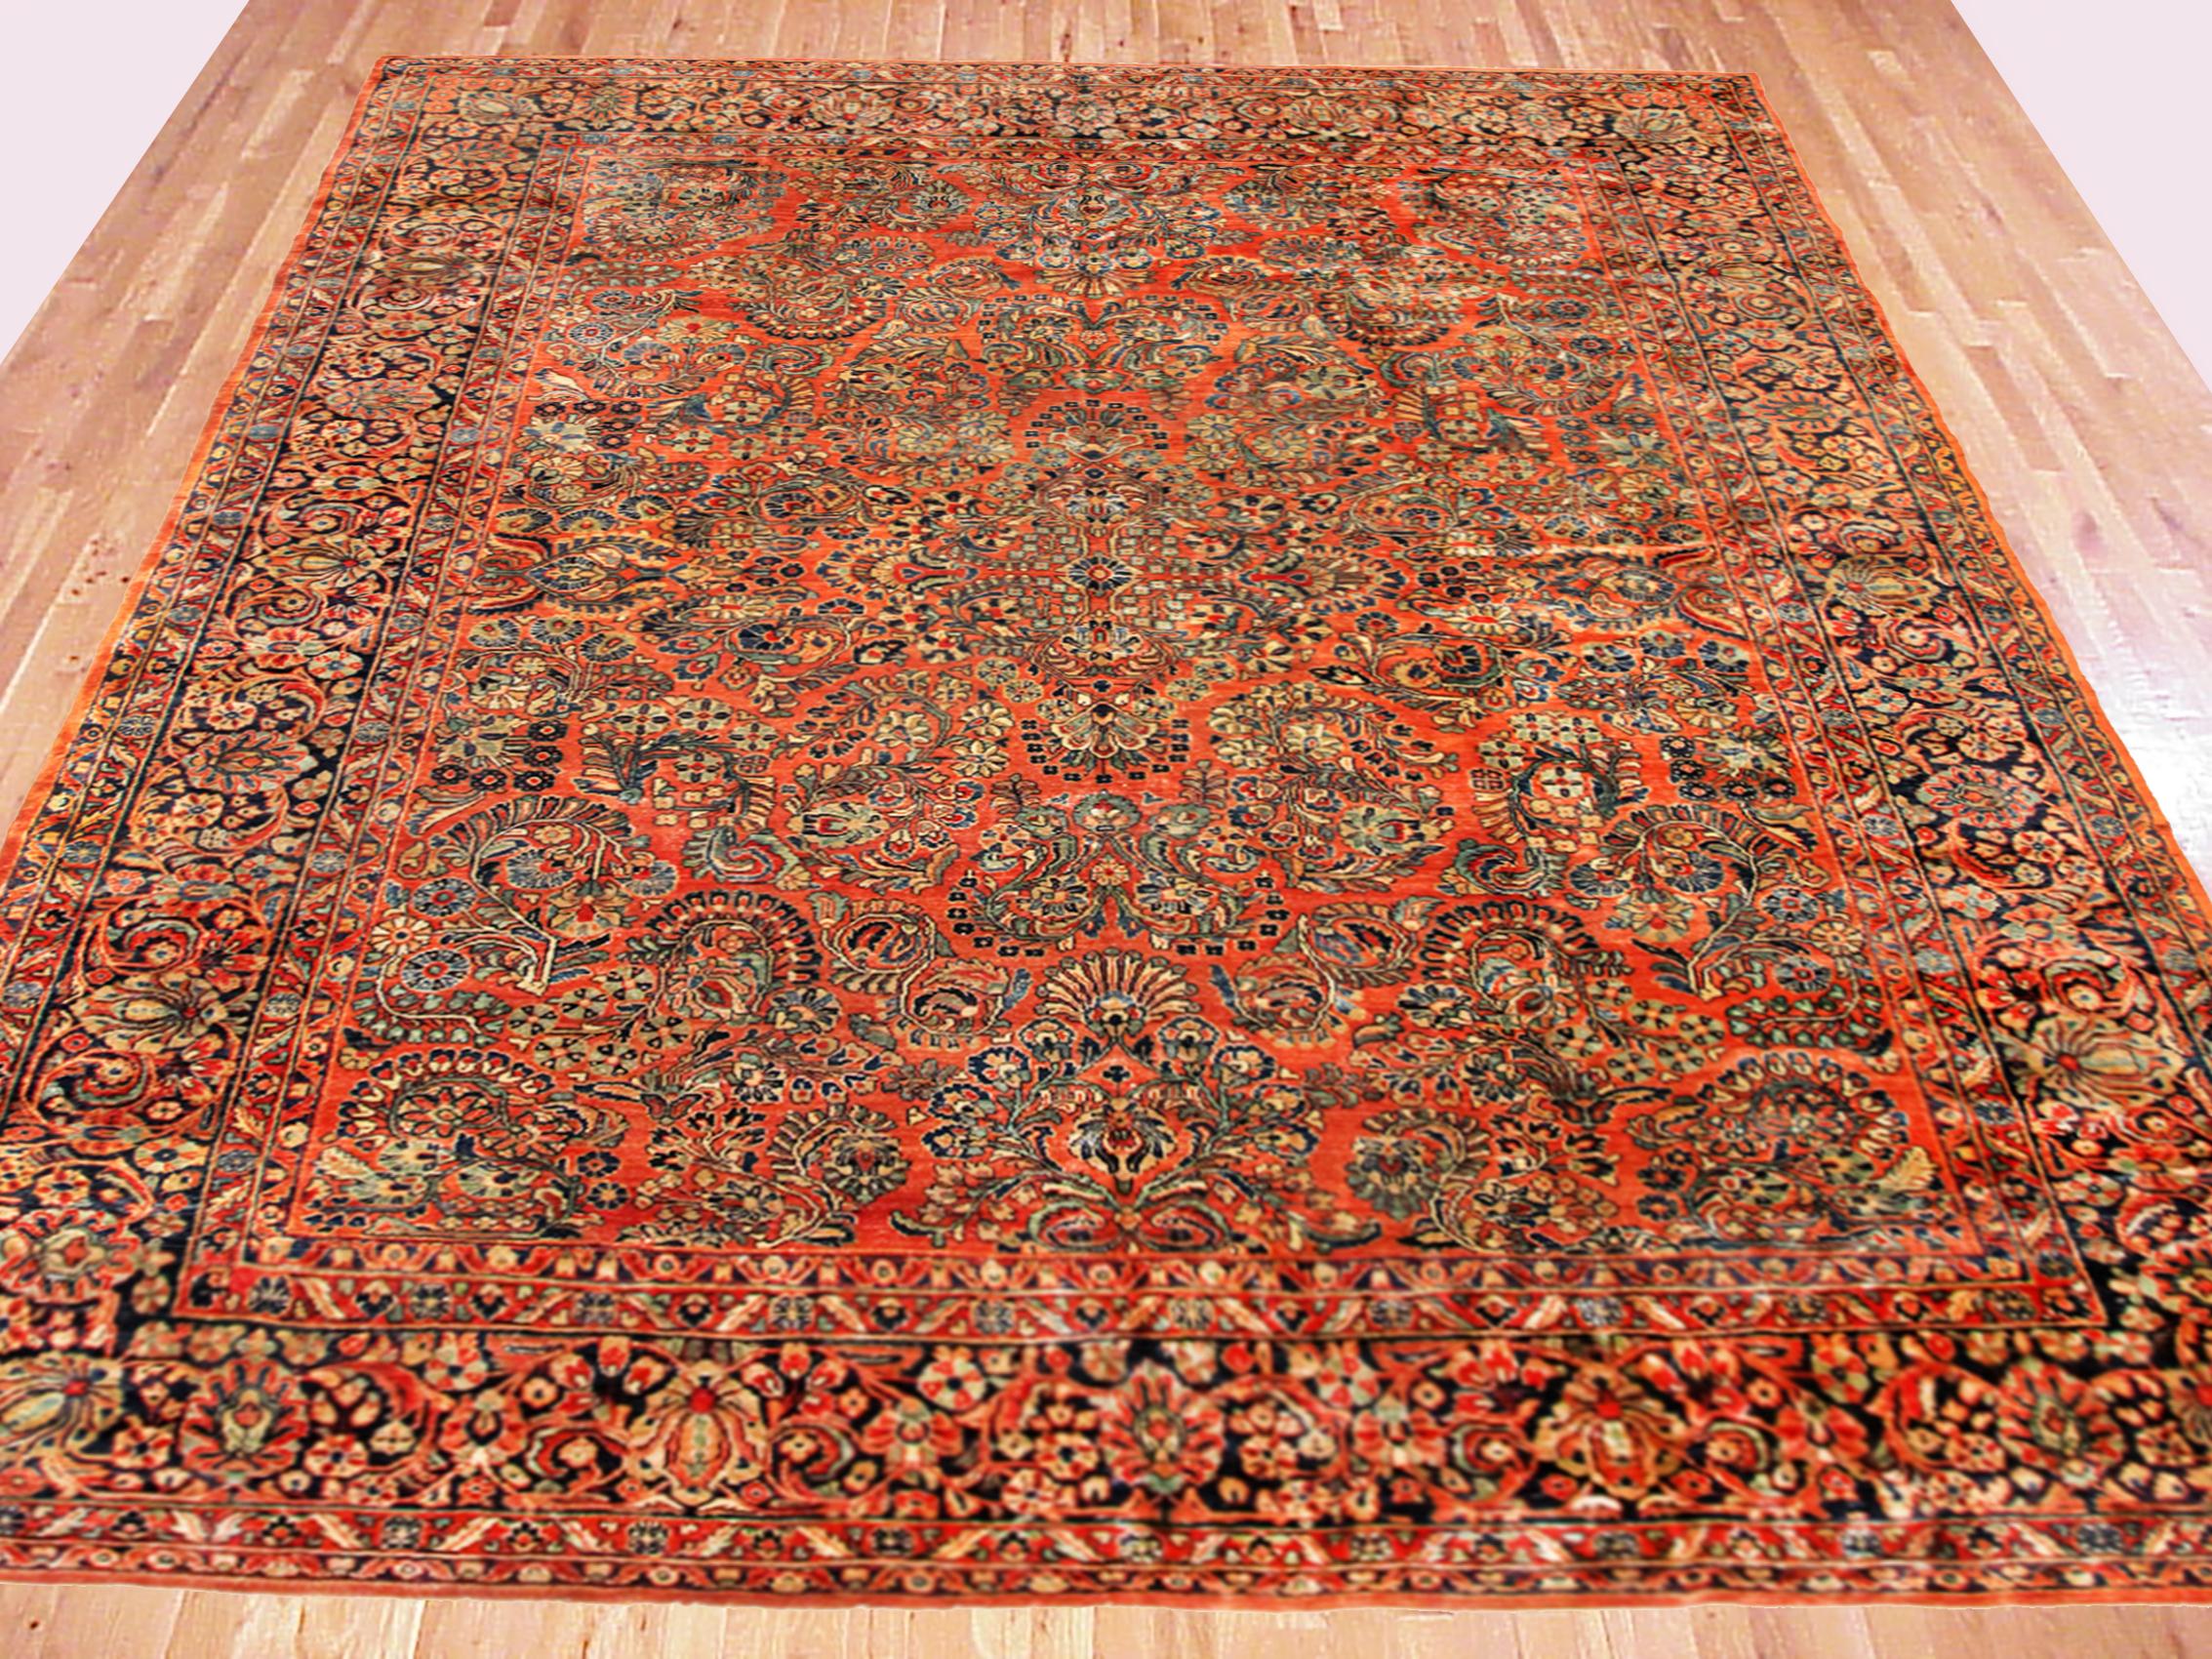 Antique Persian Sarouk Oriental rug, circa 1920, Room size.

An antique Persian Sarouk oriental rug, size 11'9